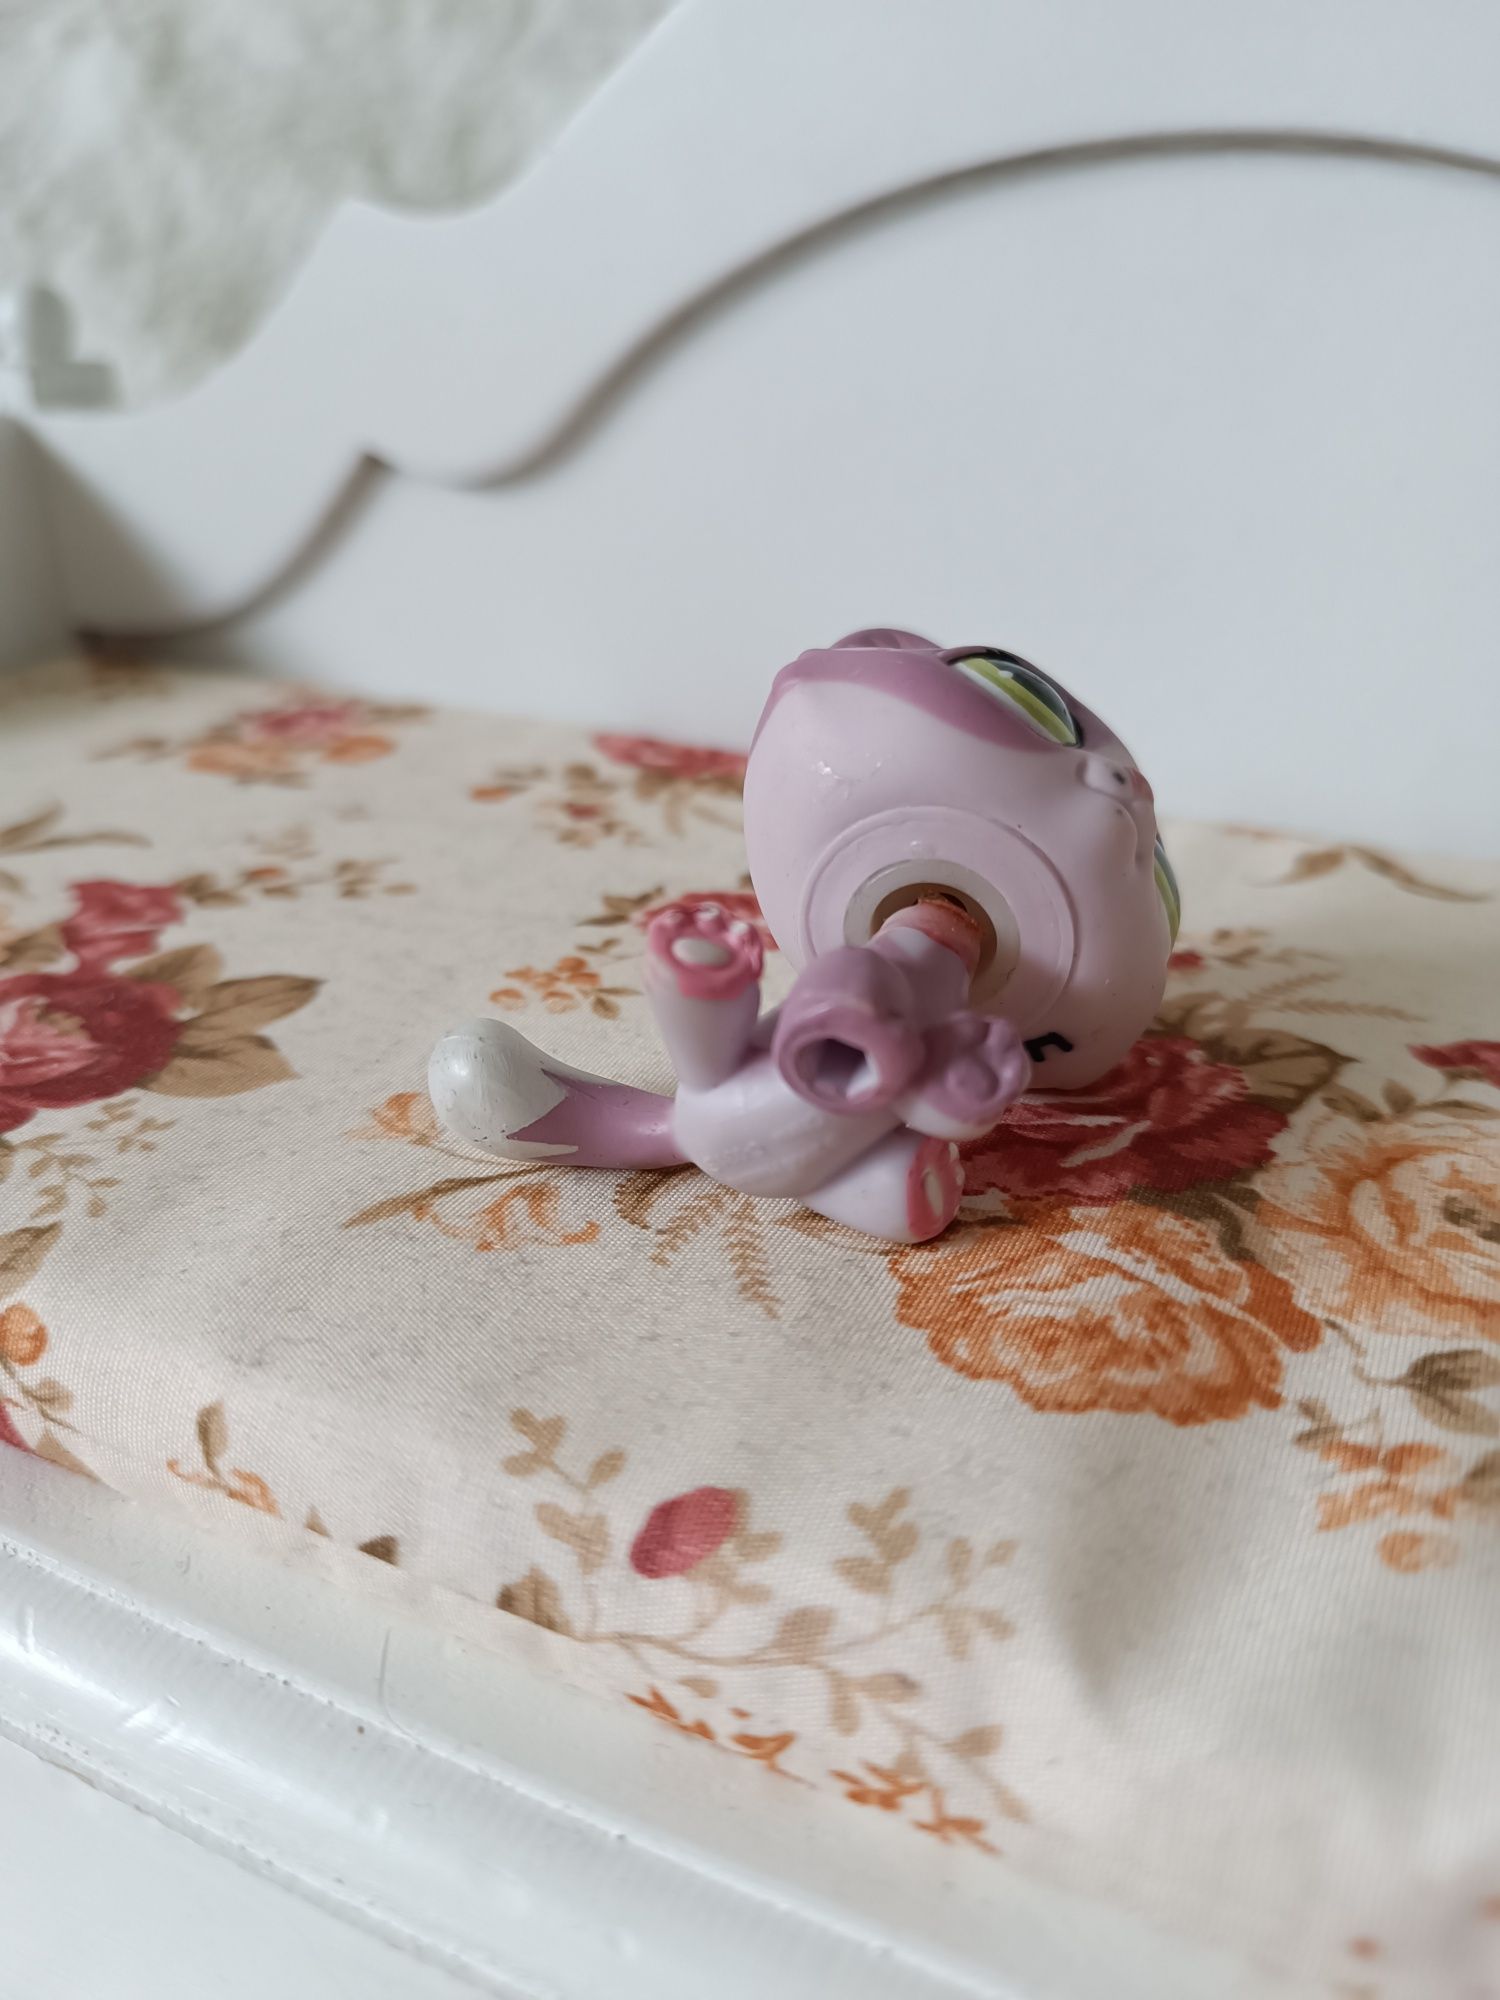 Figurka lps 1660 littlest pet shop Hasbro fioletowy kot Tabby kotek